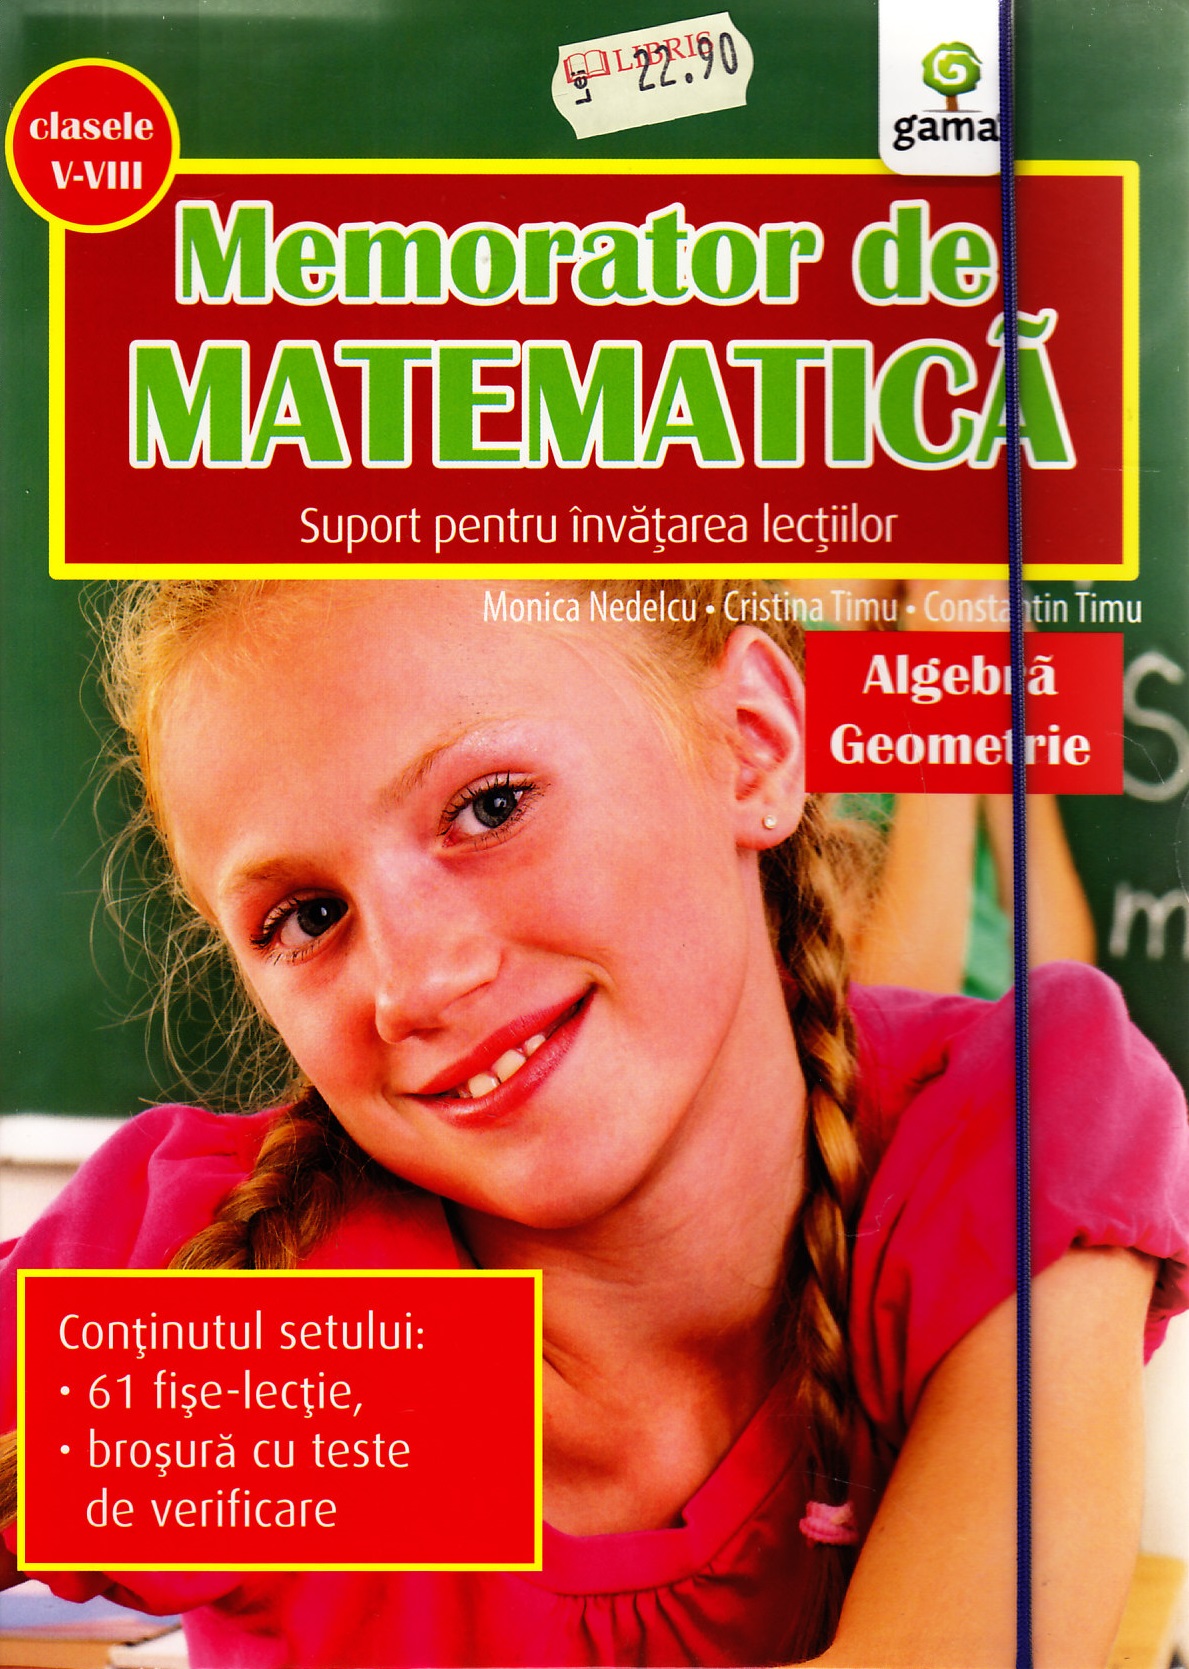 Memorator de matematica clasa 5-8 (Algebra, Geometrie) - Monica Nedelcu, Cristina Timu